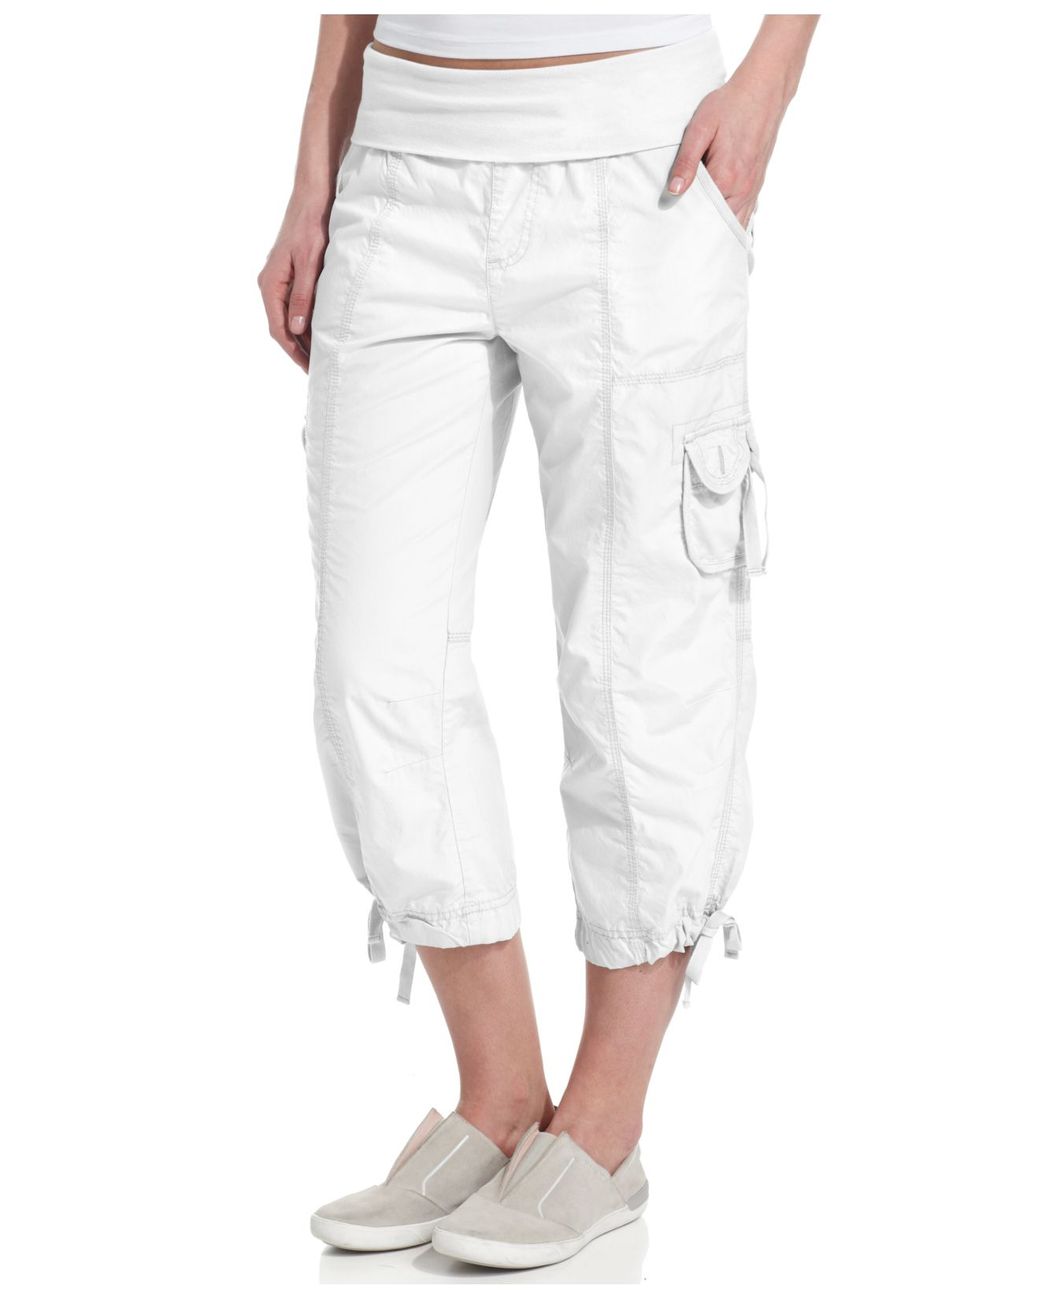 Pantology Women's White Cropped Capri Pants Stretch Cotton Spandex Size 16